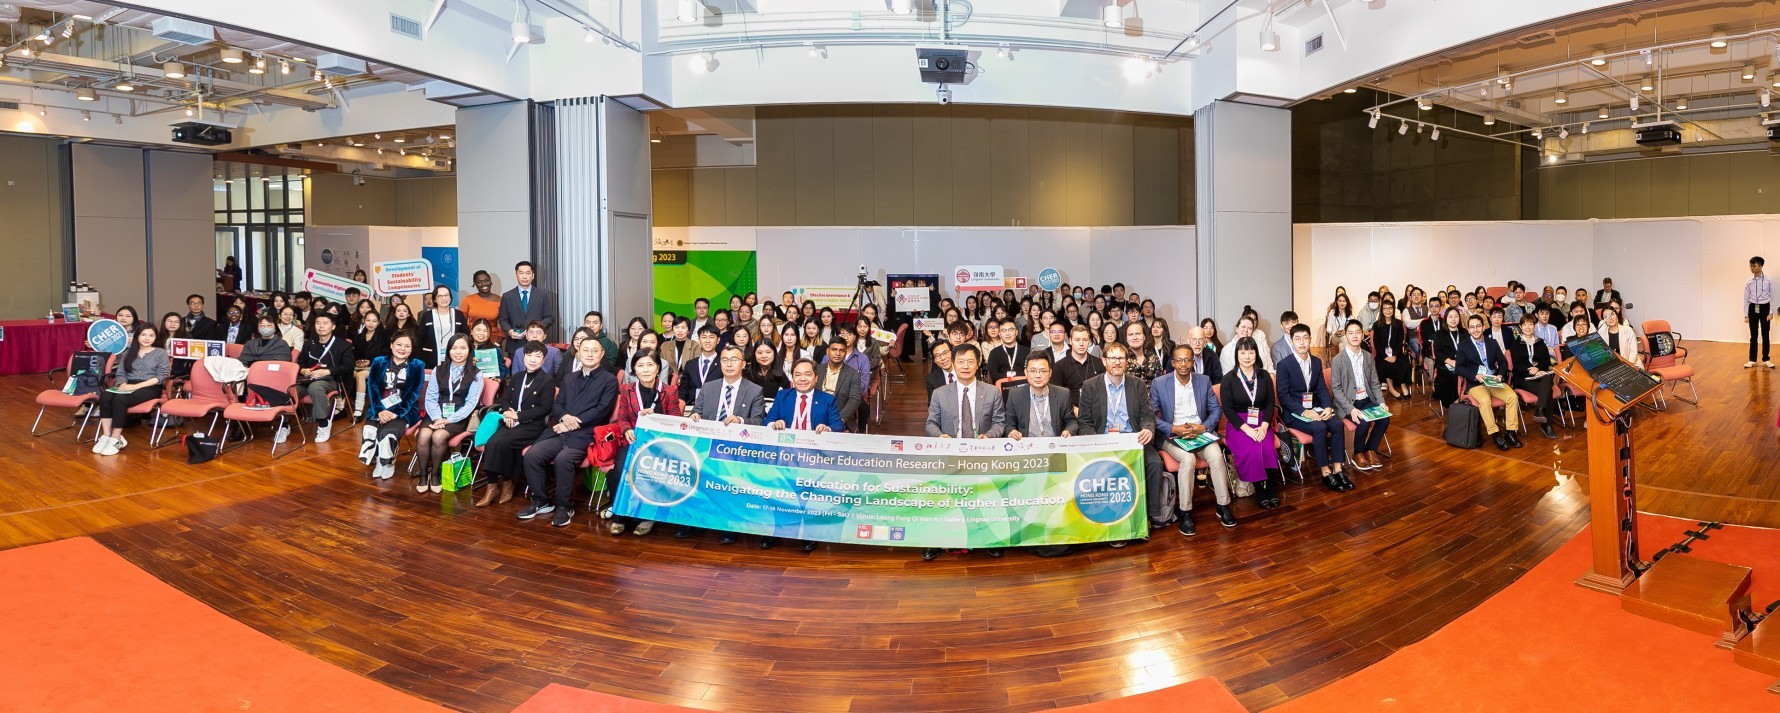 「高等教育研究國際會議 (香港 - 2023)」-探討可持續發展教育及歡迎新合作夥伴加盟亞太高等教育研究聯盟（APHERP）